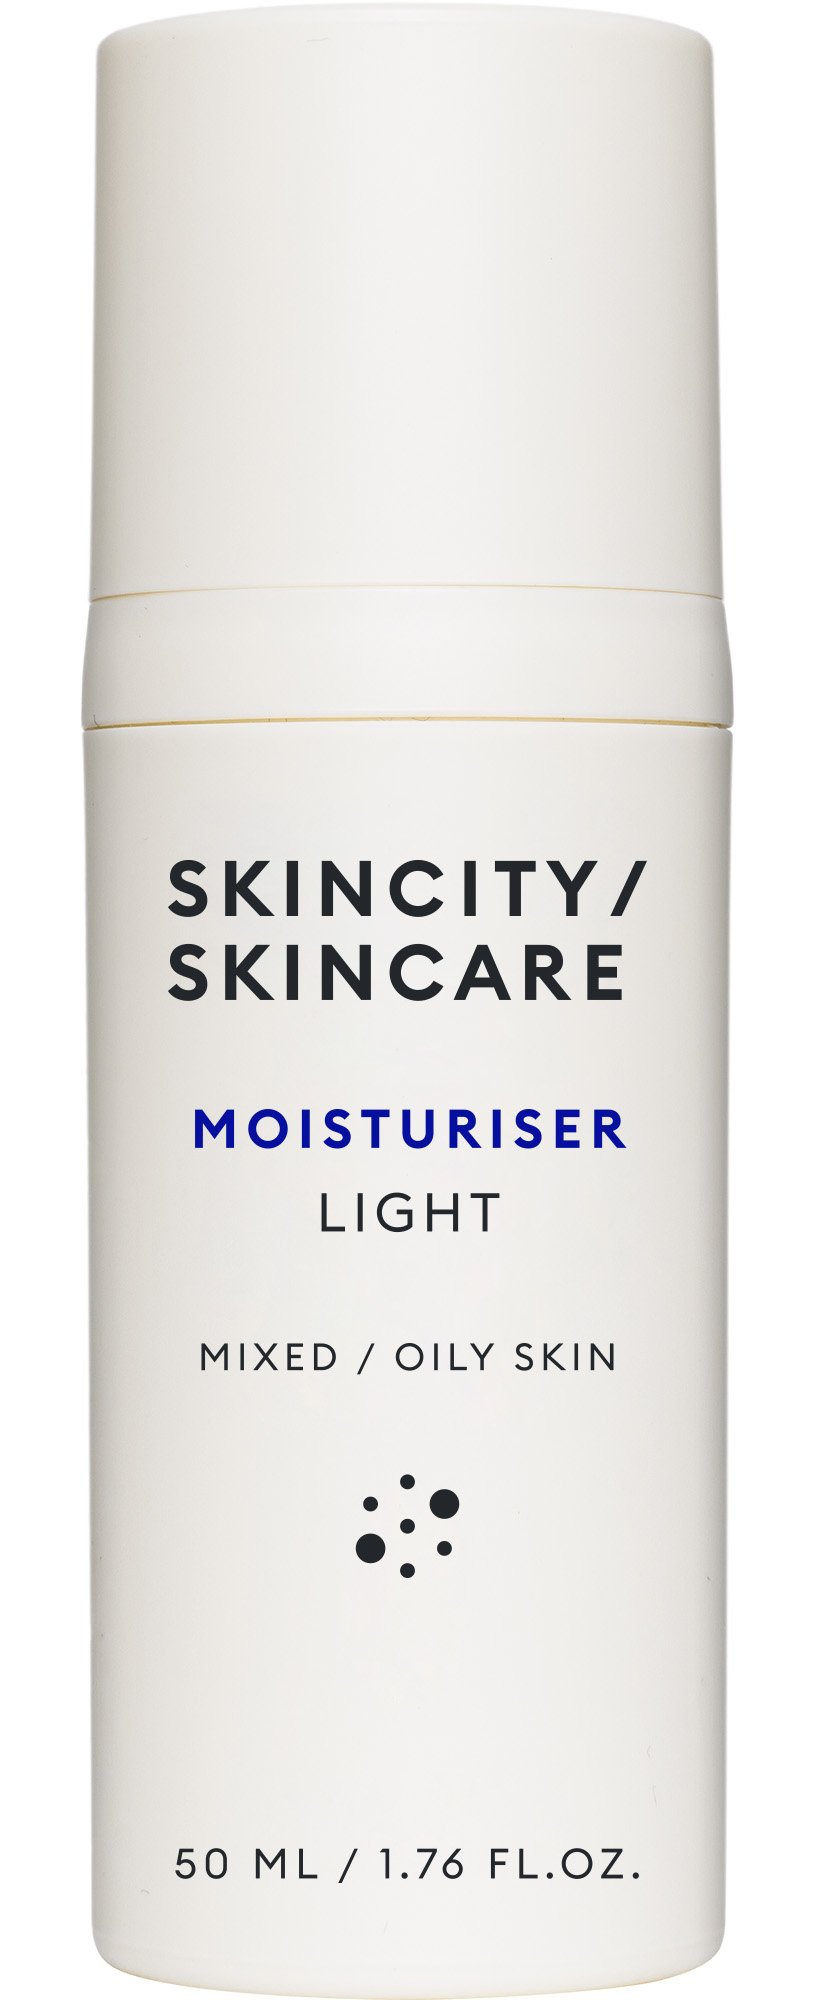 skincity skincare Light Moisturiser